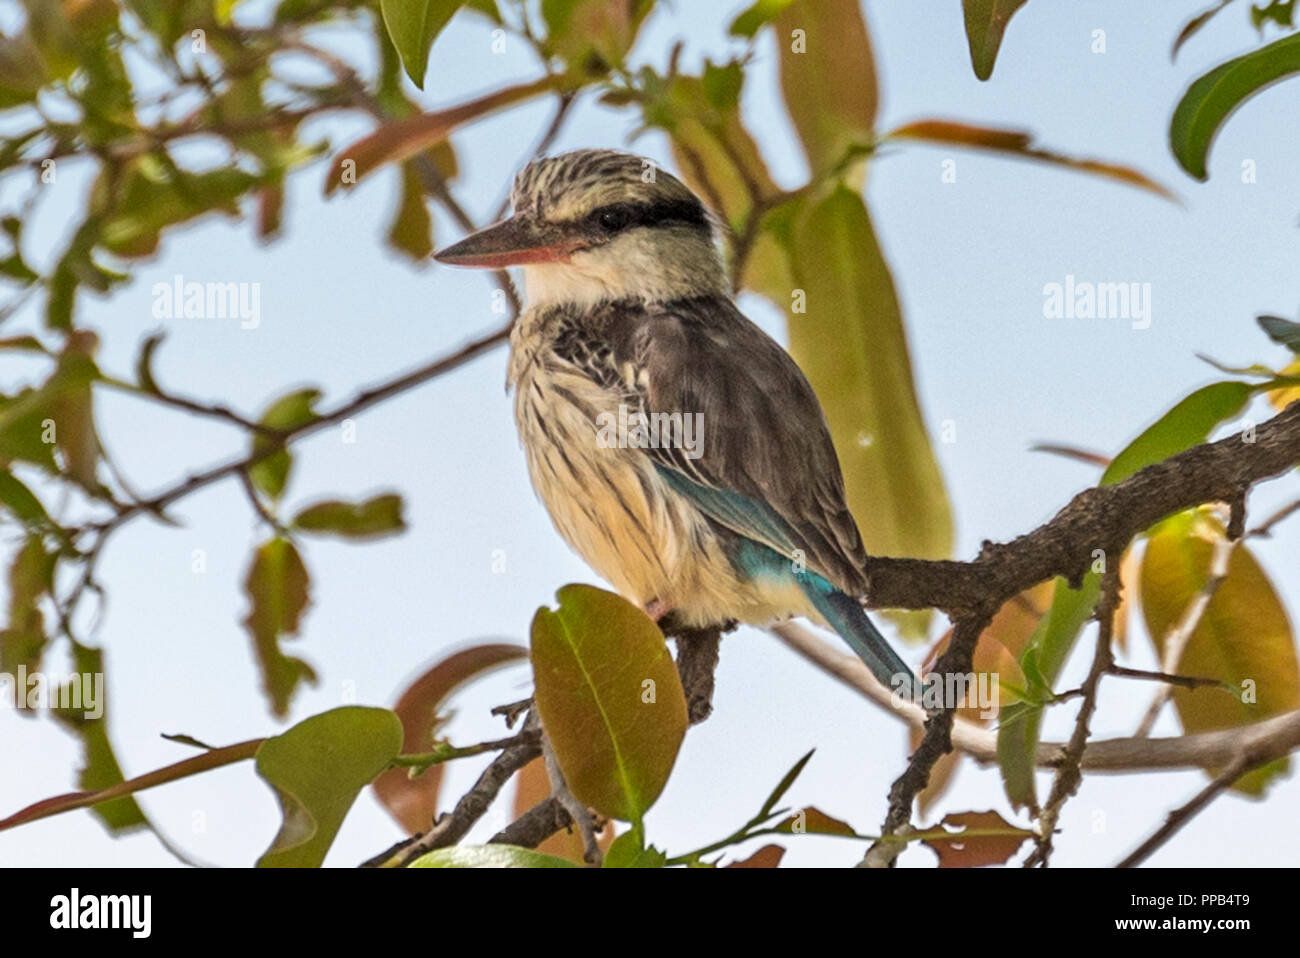 Gestreifte Kingfisher (Halcyon chelicuti) ist eine Pflanzenart aus der Unterfamilie der Baum Kingfisher, Tis Aby, Äthiopien Stockfoto